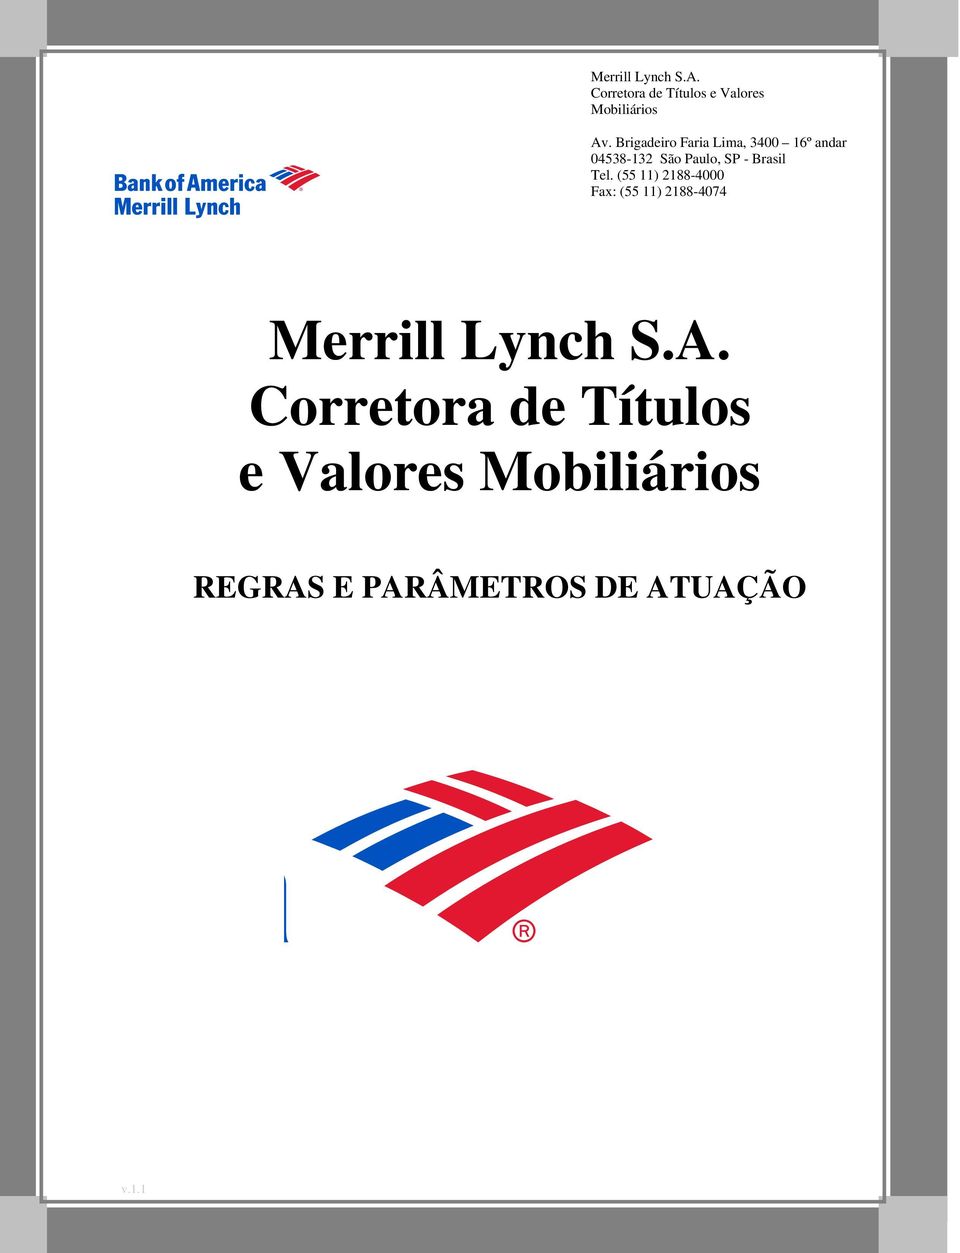 Brasil Tel. (55 ) 288-4000 Fax: (55 ) 288-4074 Merrill Lynch S.A.